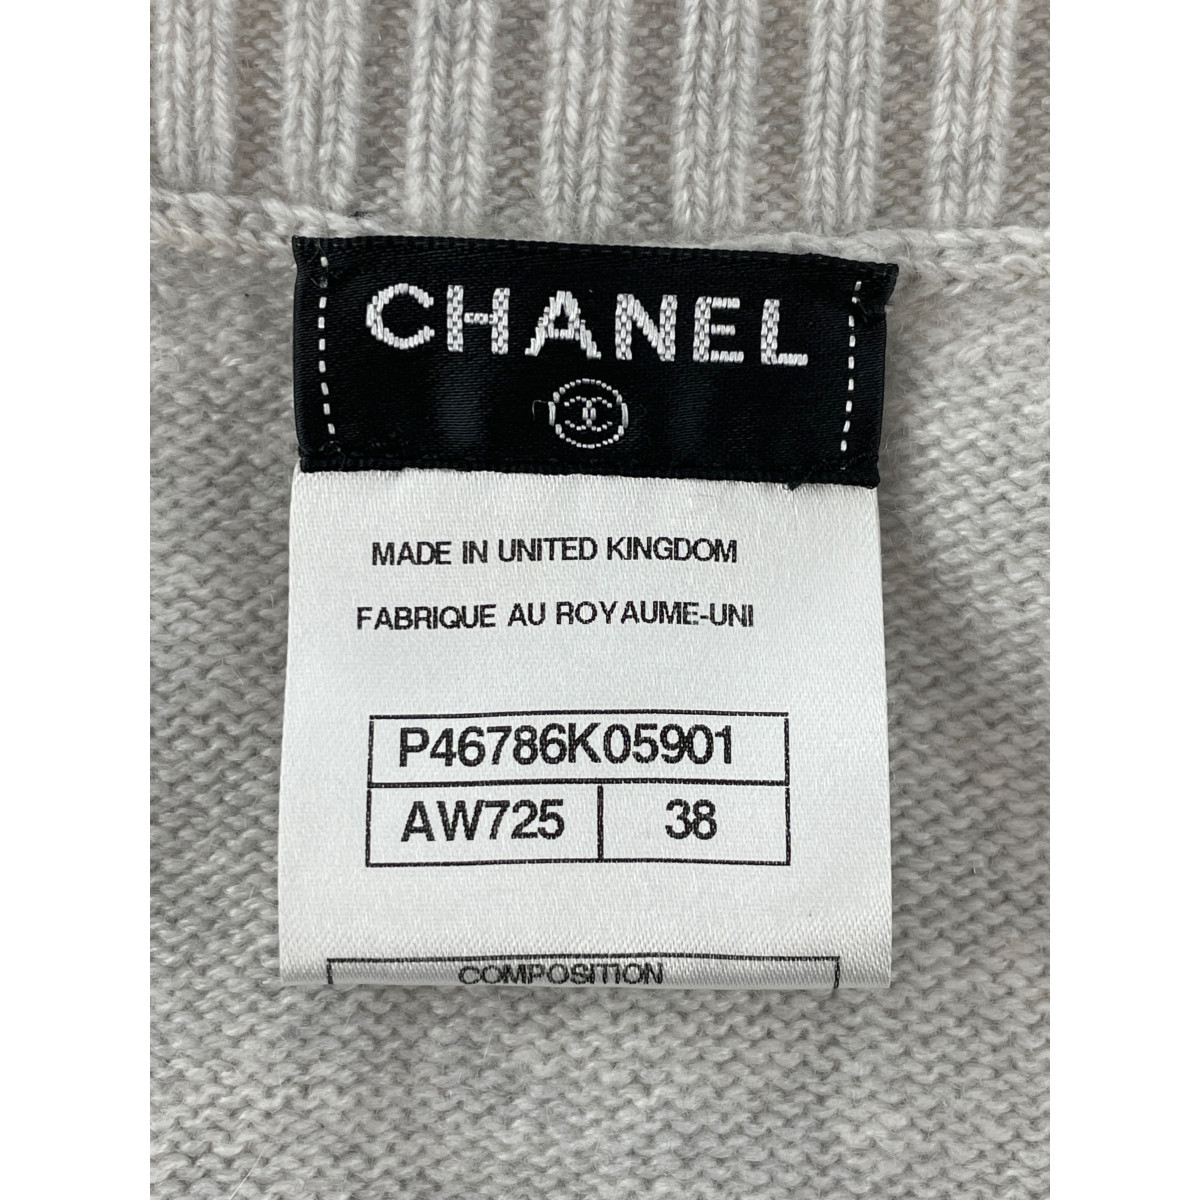  прекрасный товар / внутренний стандартный CHANEL Chanel P46786 K05901 здесь Mark Turn блокировка . кашемир длинный кардиган 38 серый женский 